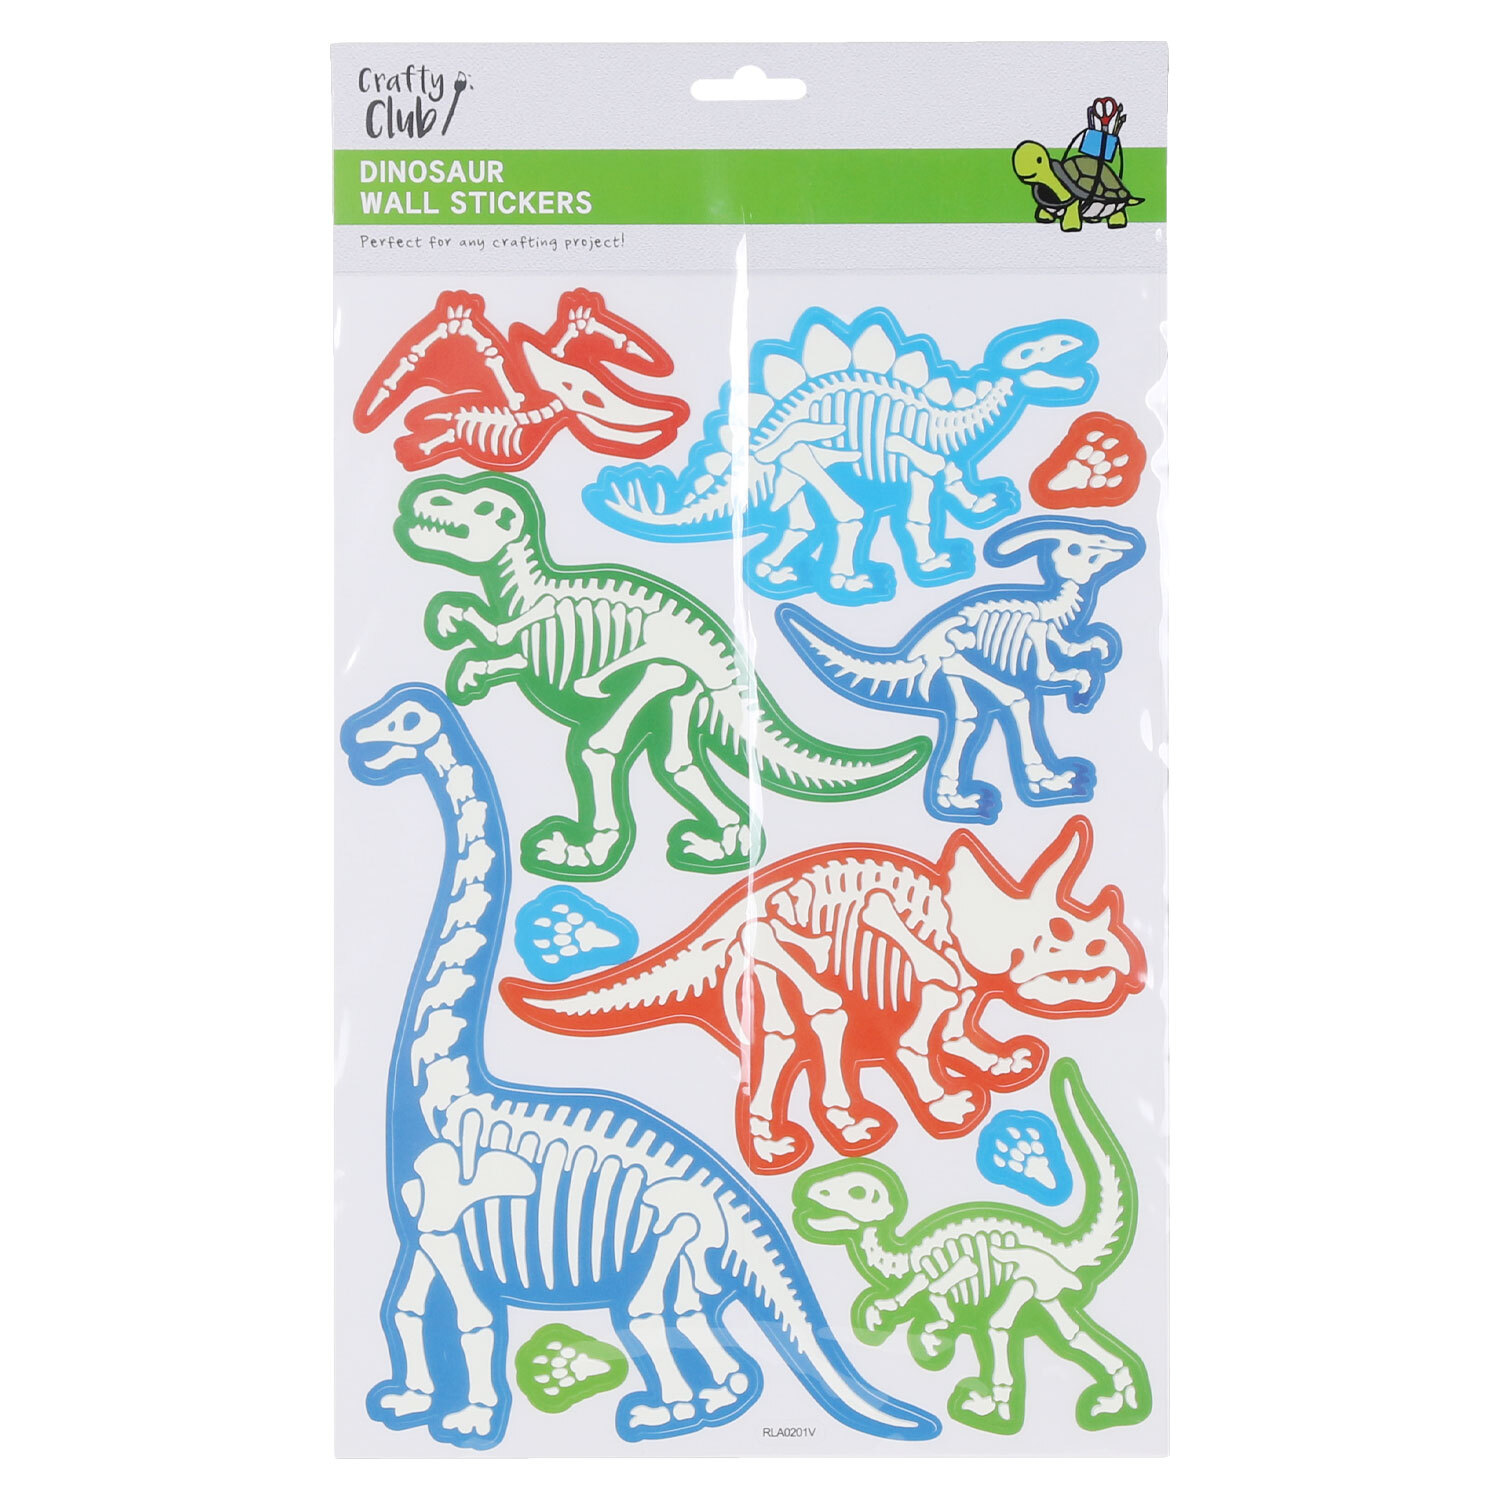 Crafty Club Dinosaur Wall Stickers Image